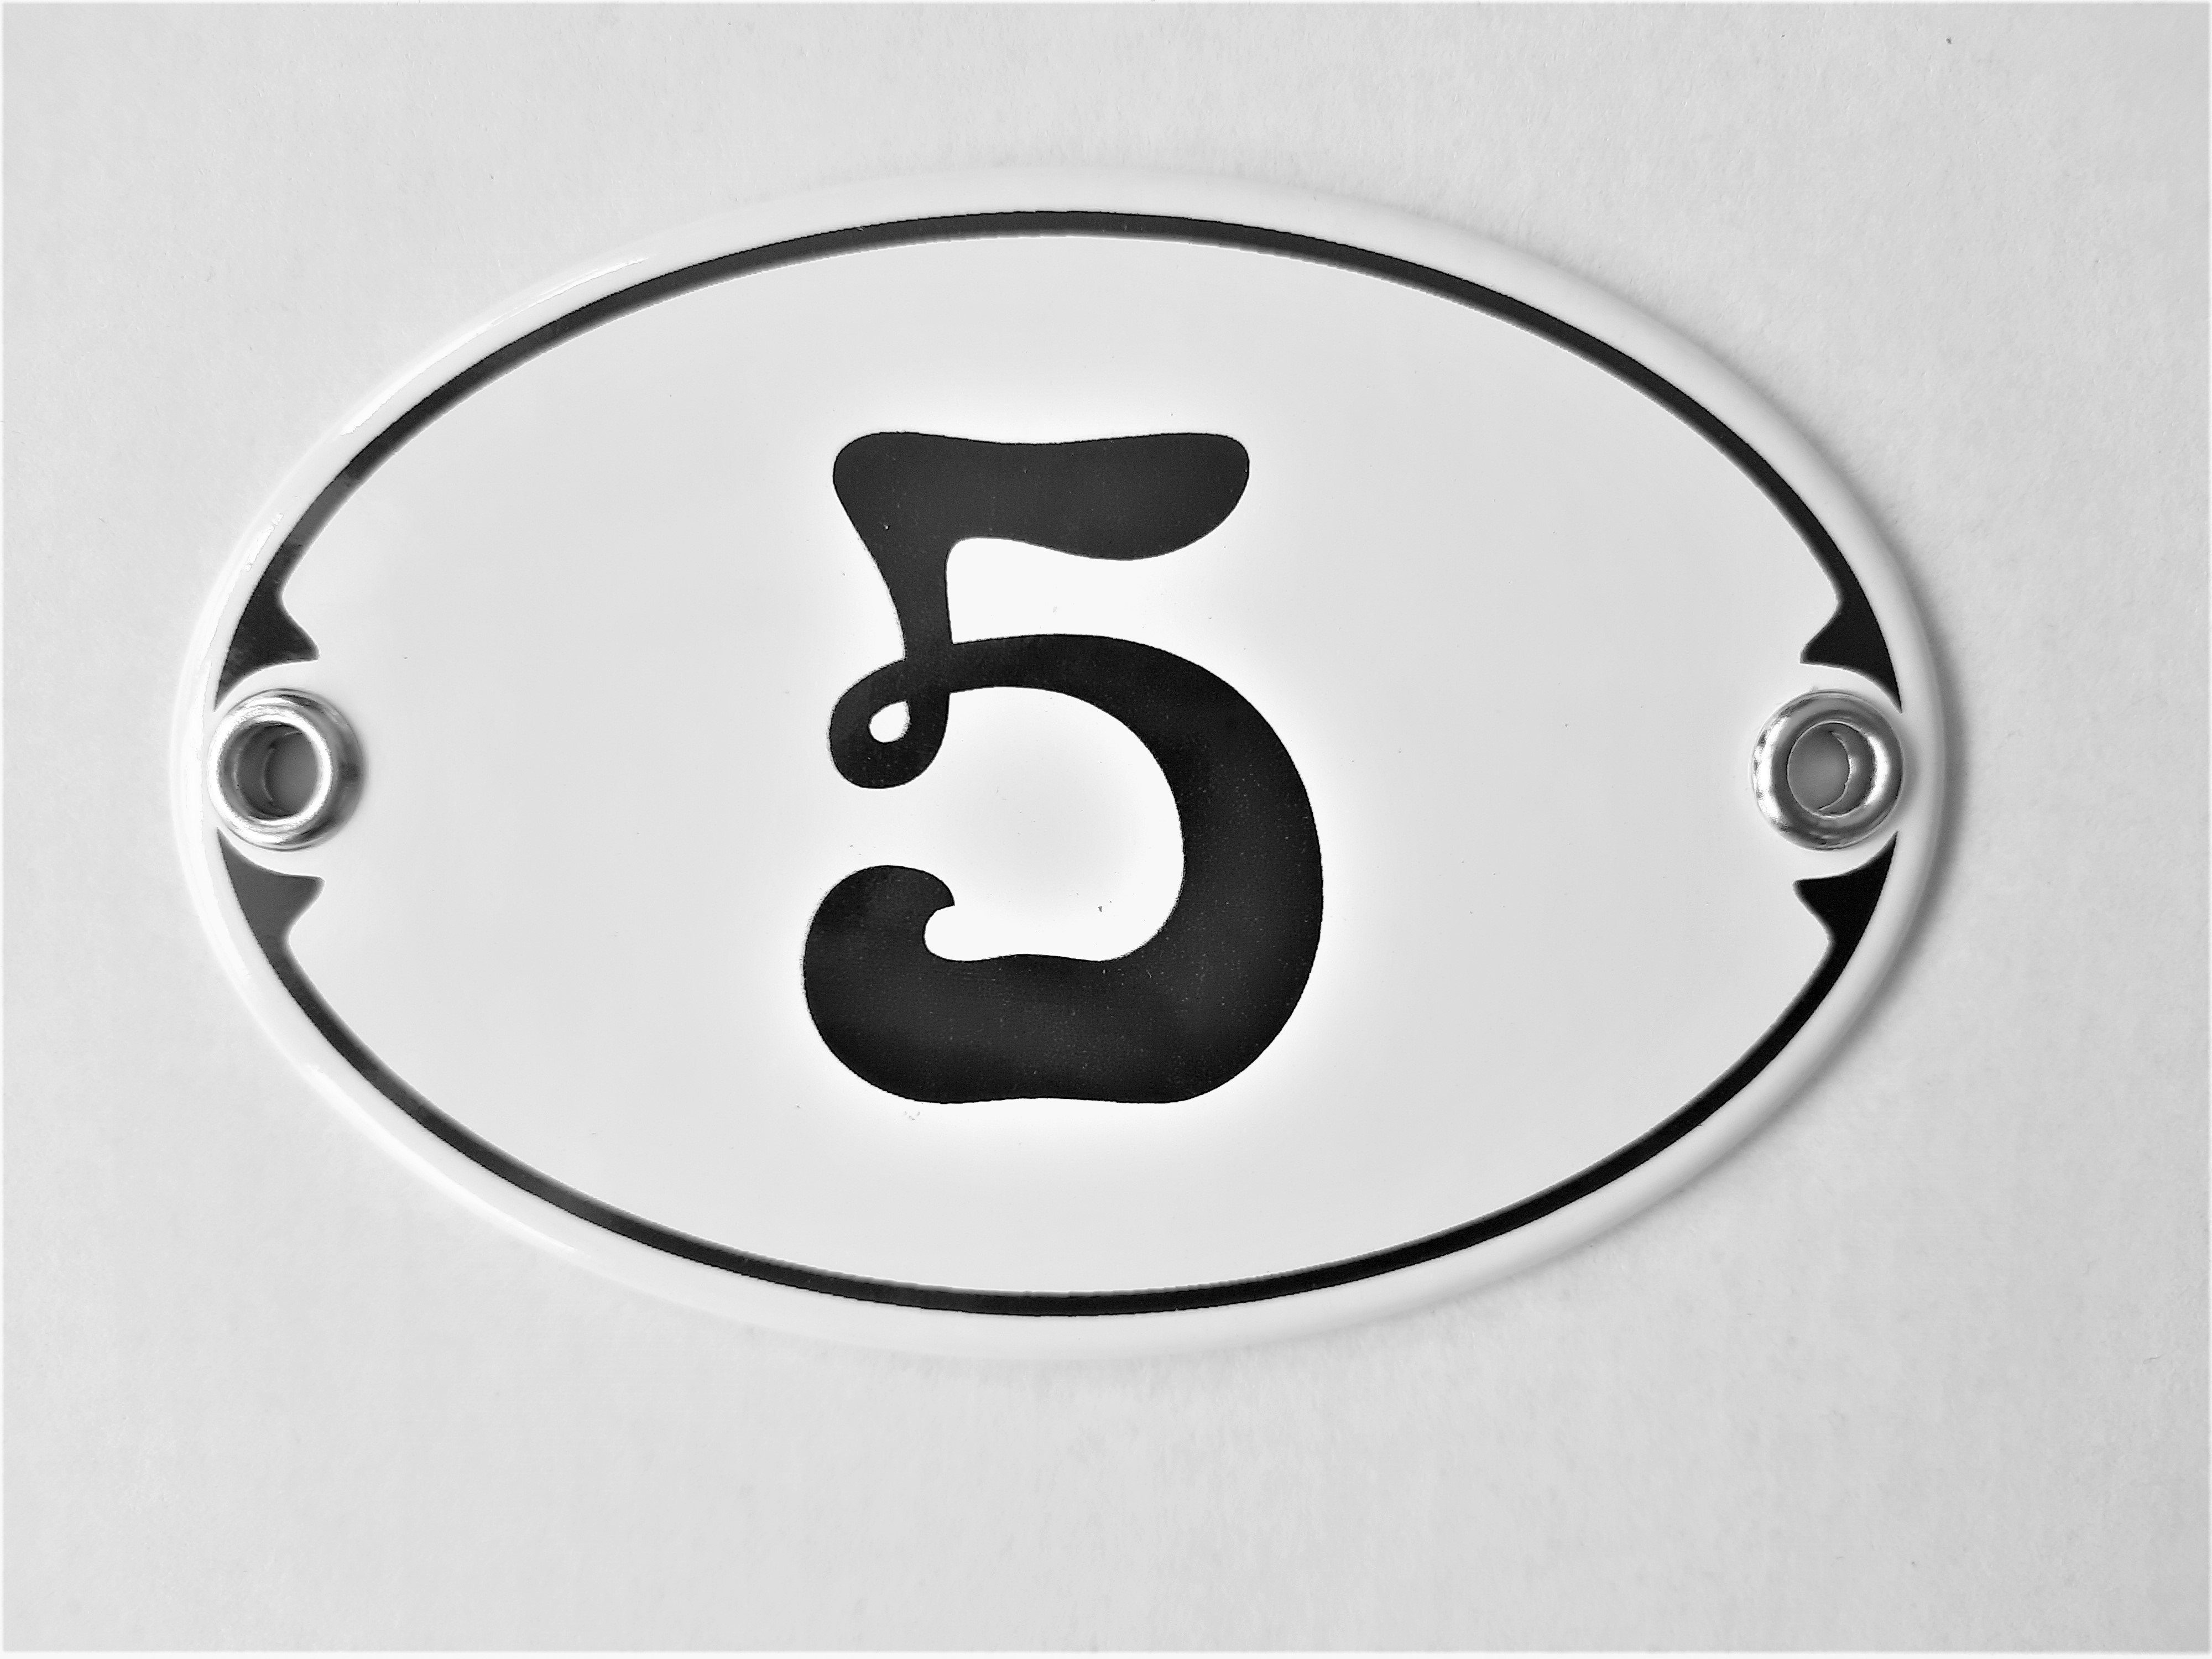 Elina Email Schilder Hausnummer Zahlenschild "5", (Emaille/Email)